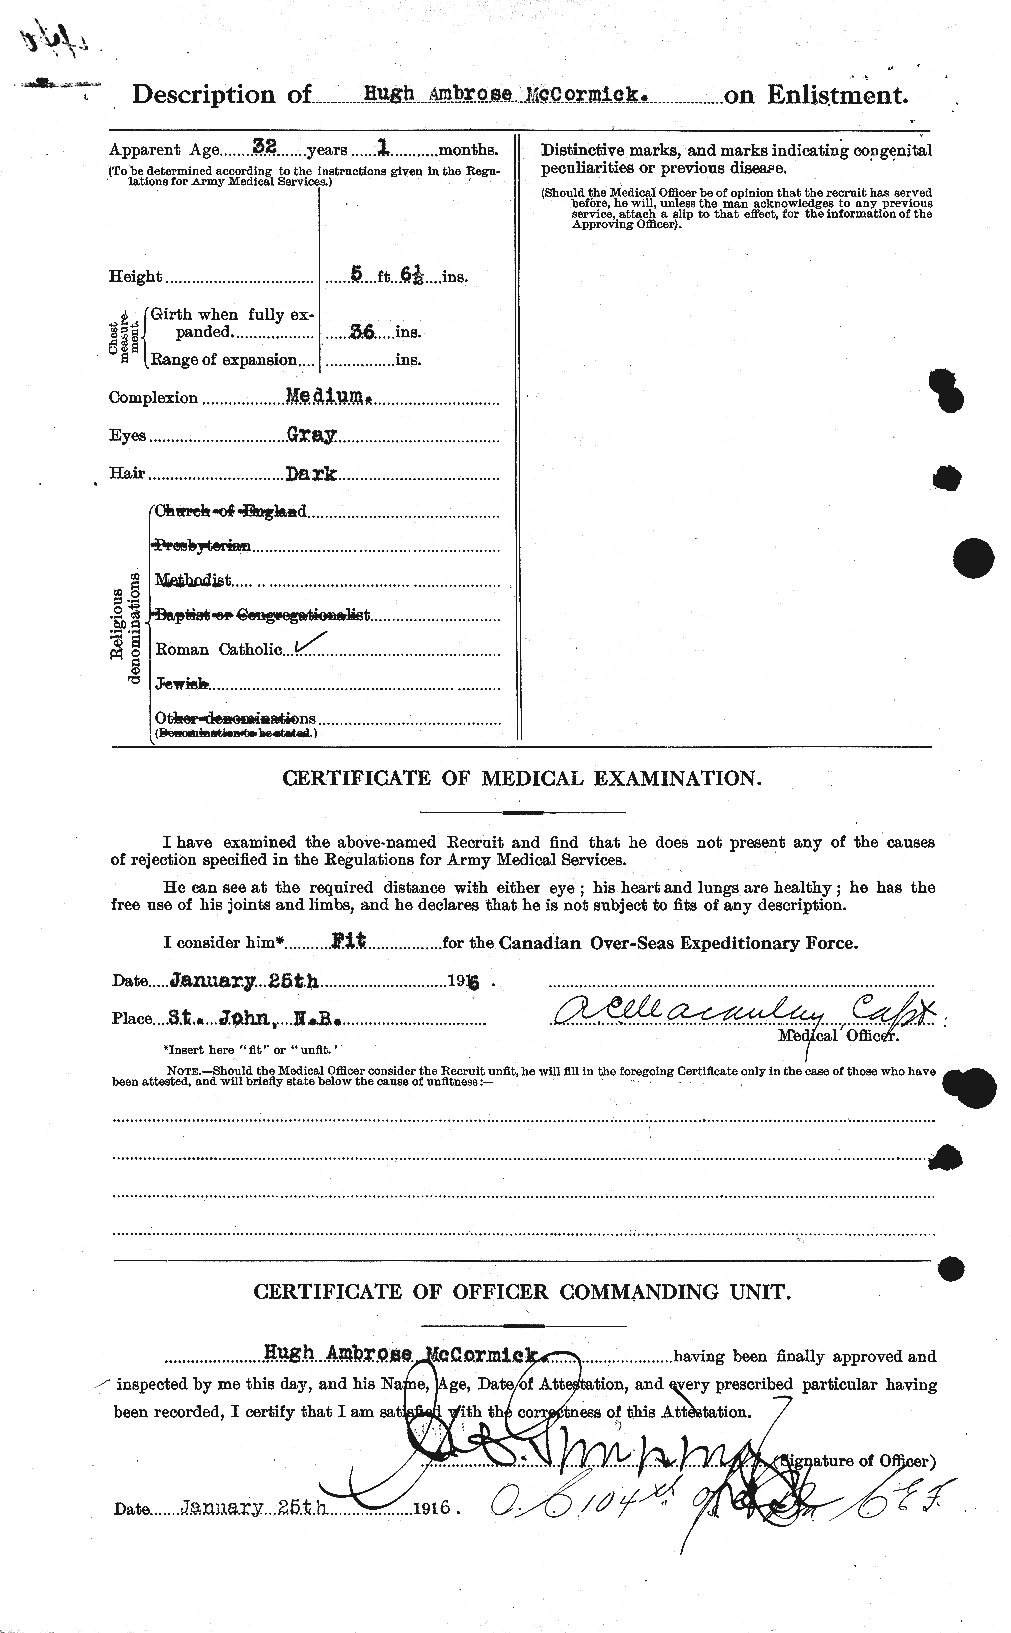 Dossiers du Personnel de la Première Guerre mondiale - CEC 133735b